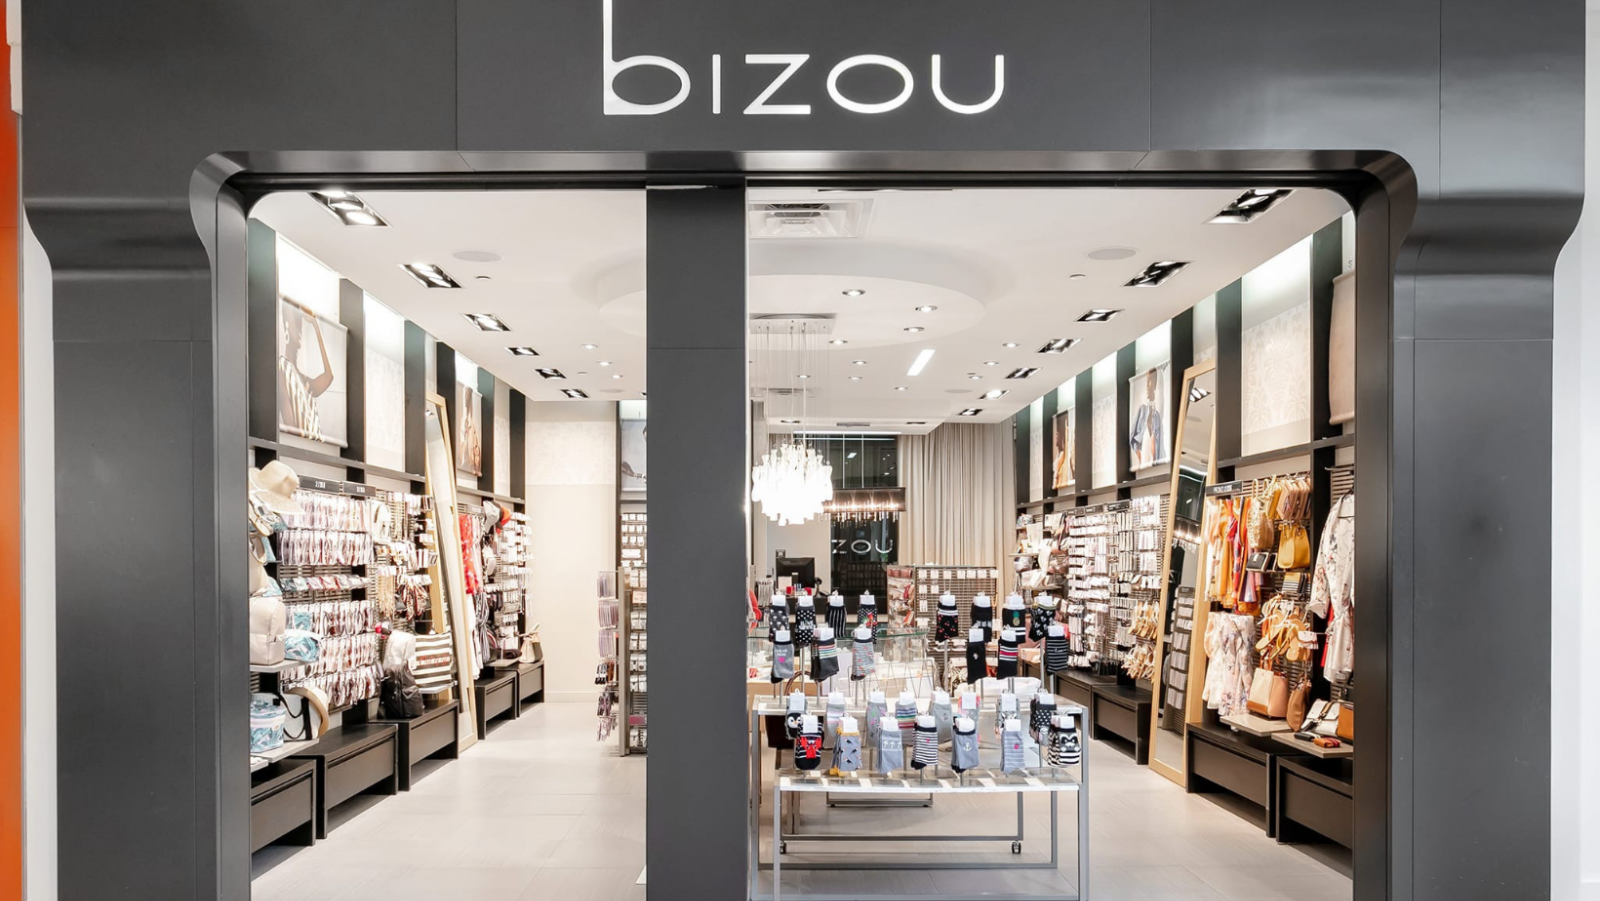 Mauvaise nouvelle pour les boutiques « Bizou »